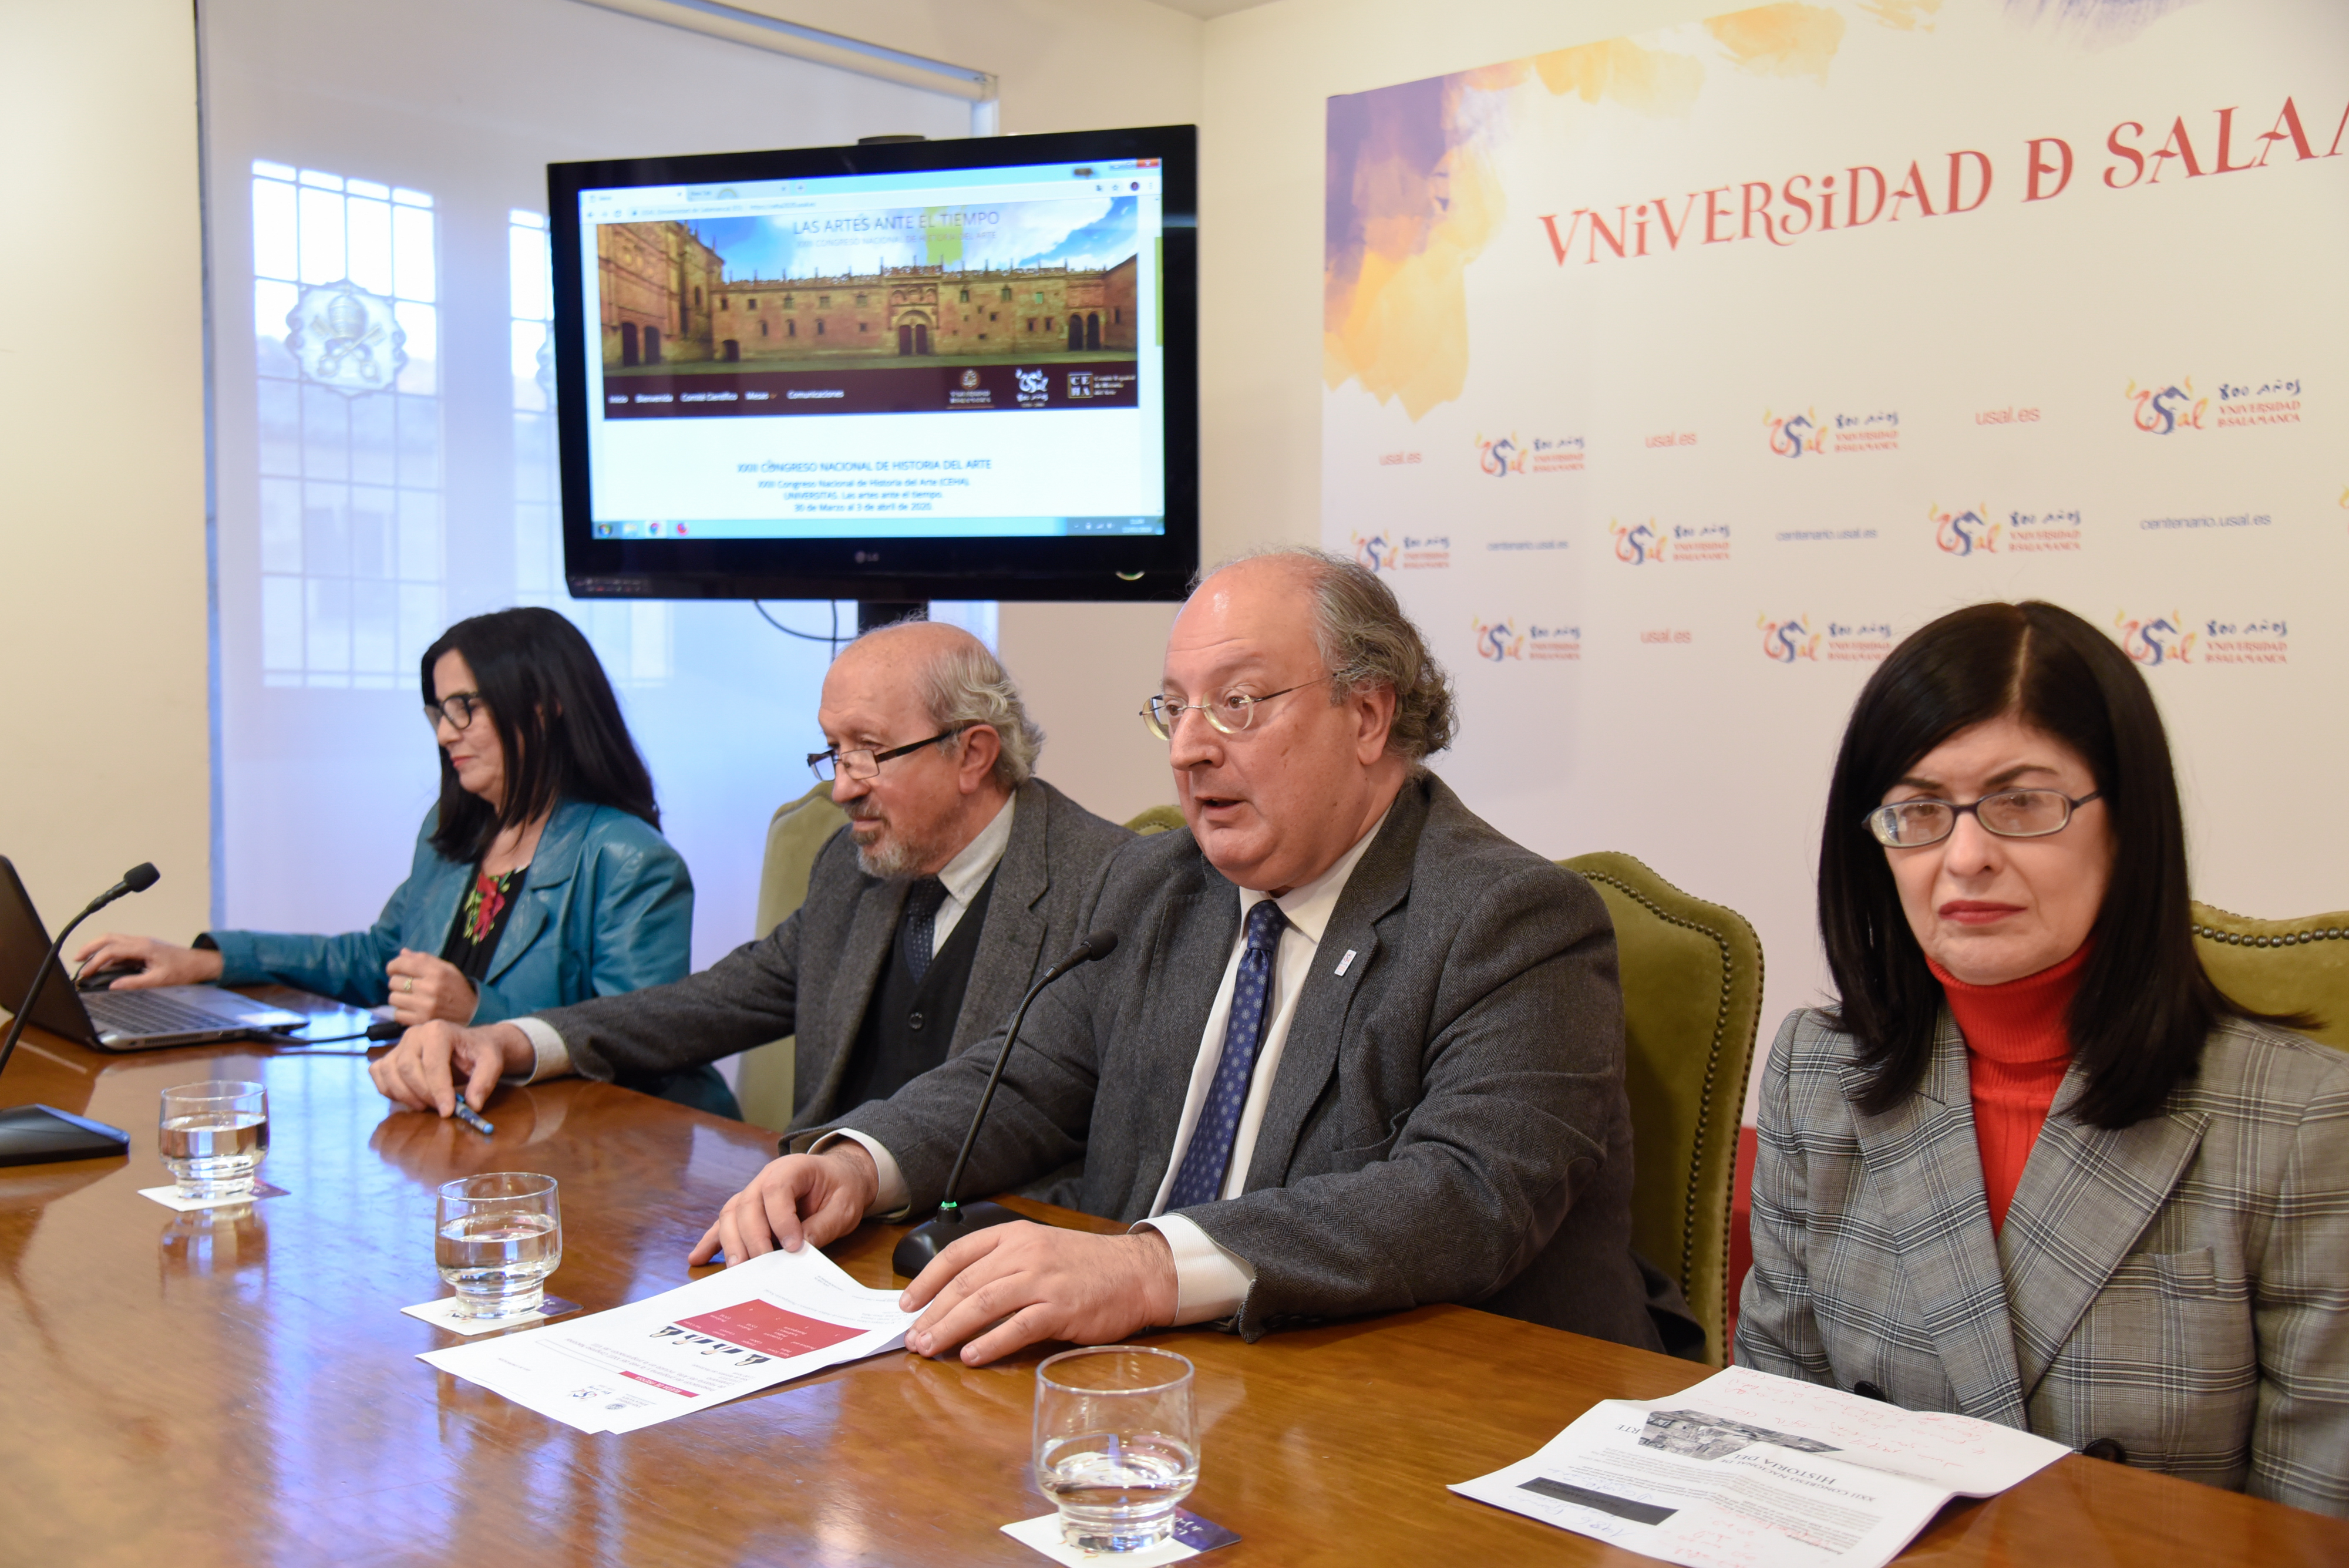 El XXIII Congreso Nacional de Historia del Arte reunirá a medio millar de expertos en Salamanca en 2020